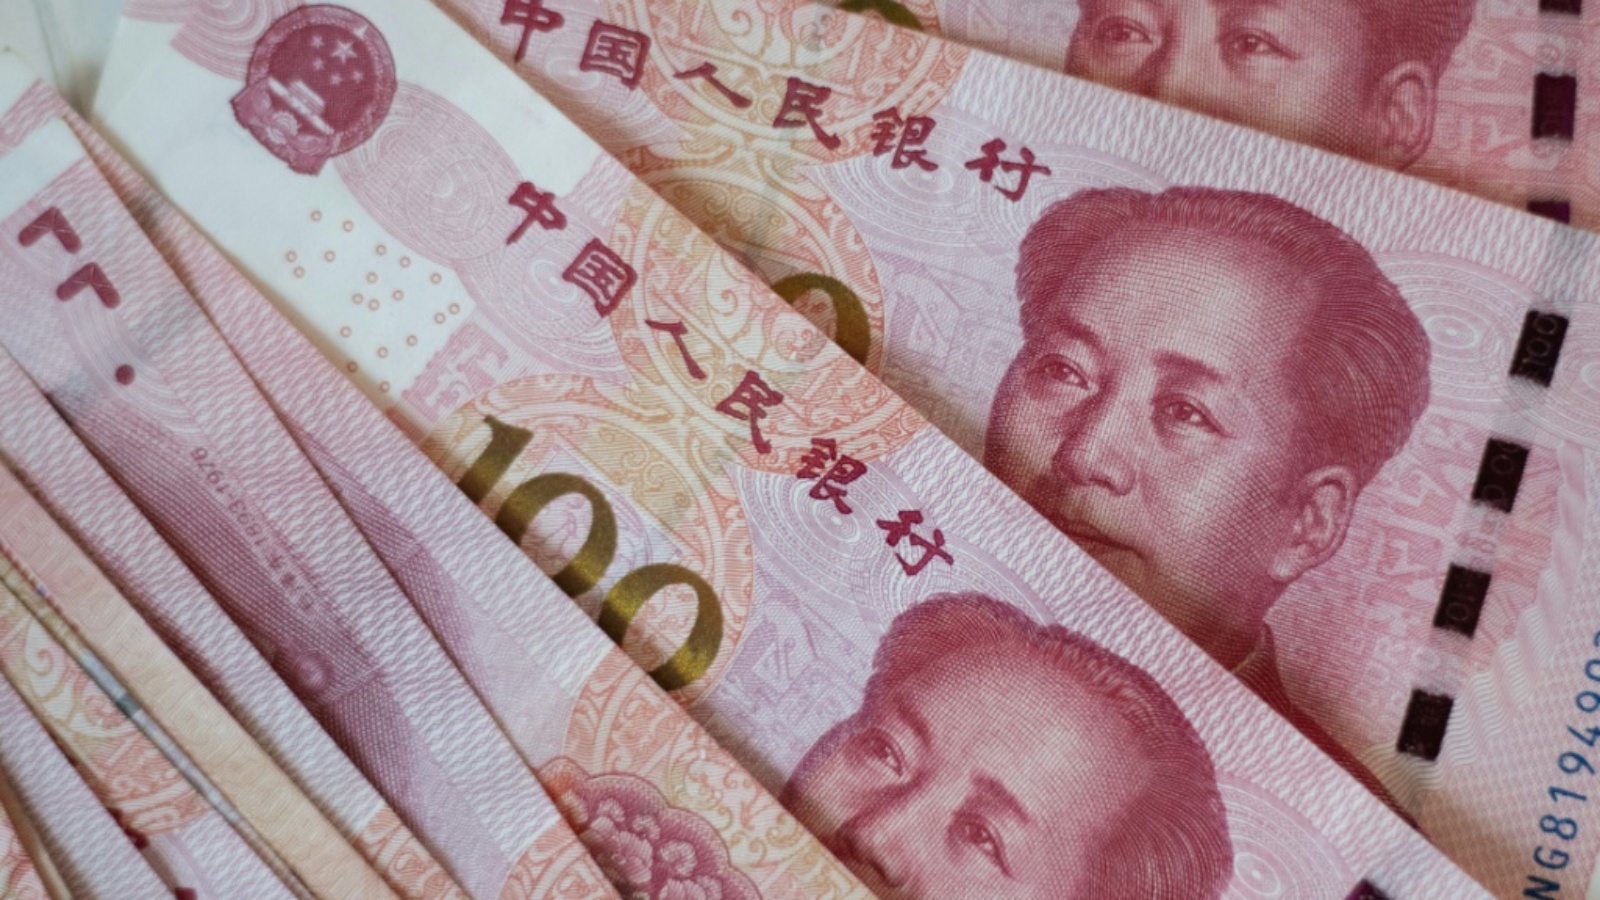 أوراق نقدية من فئة 100 يوان، في بكين في 13 أغسطس 2019